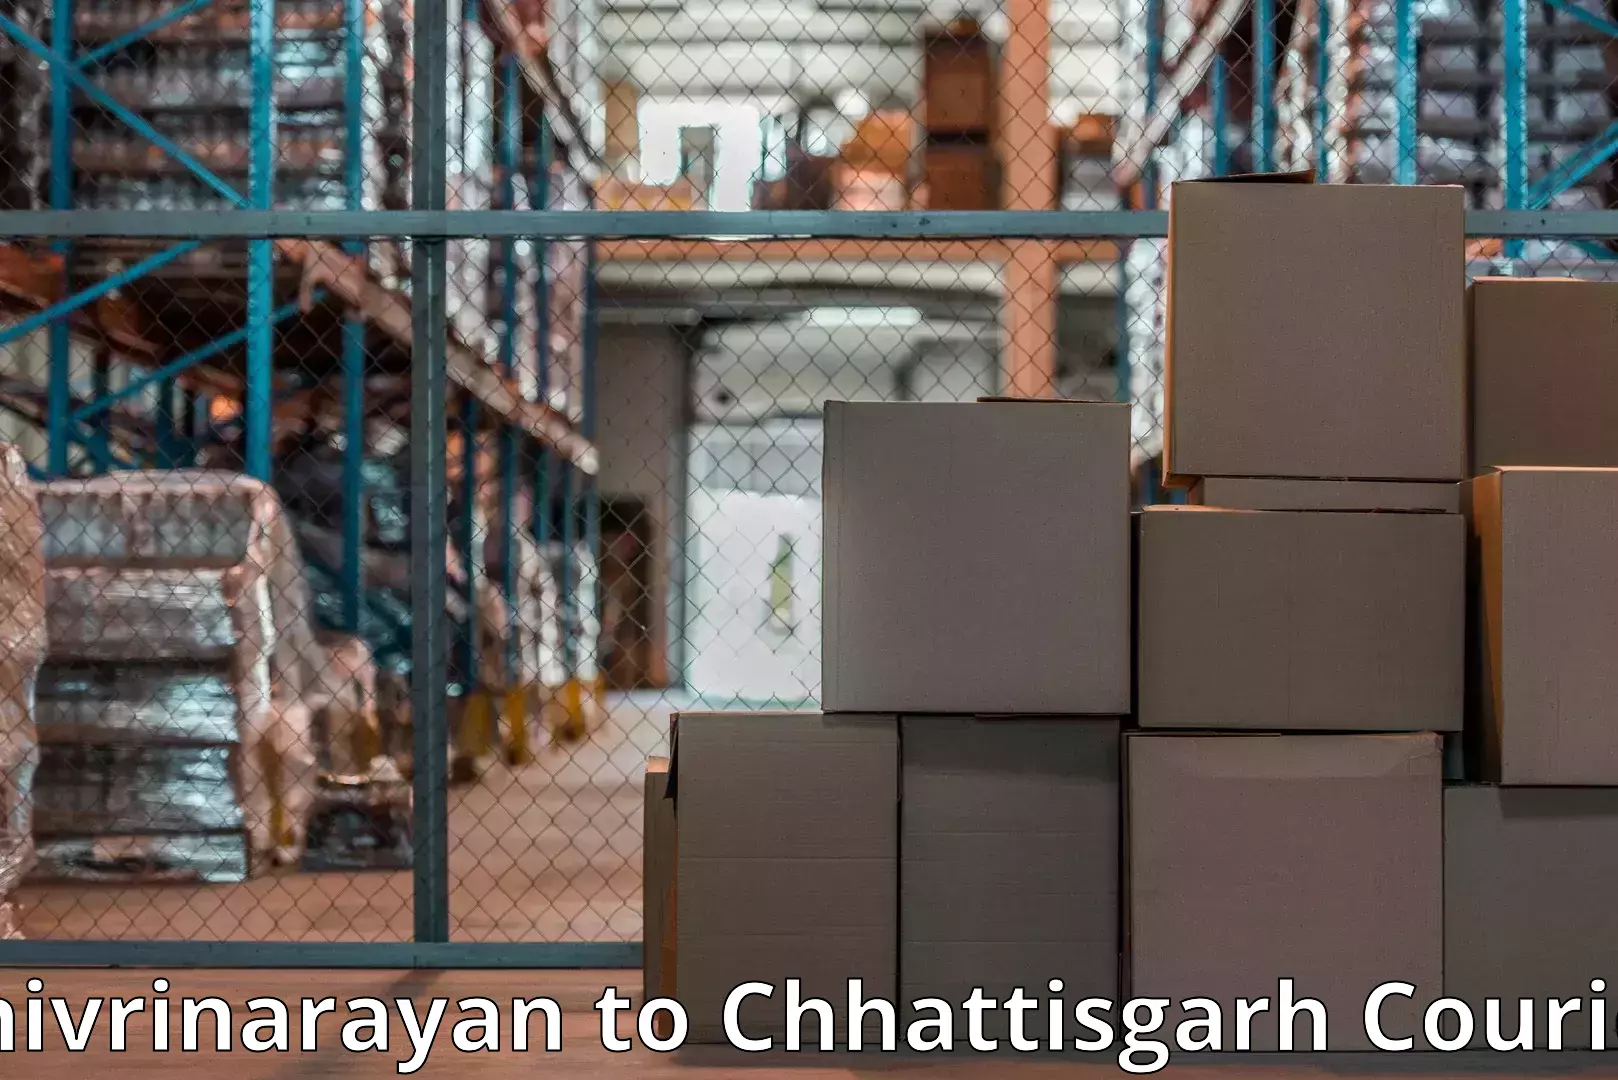 Personalized moving service in Shivrinarayan to Manendragarh